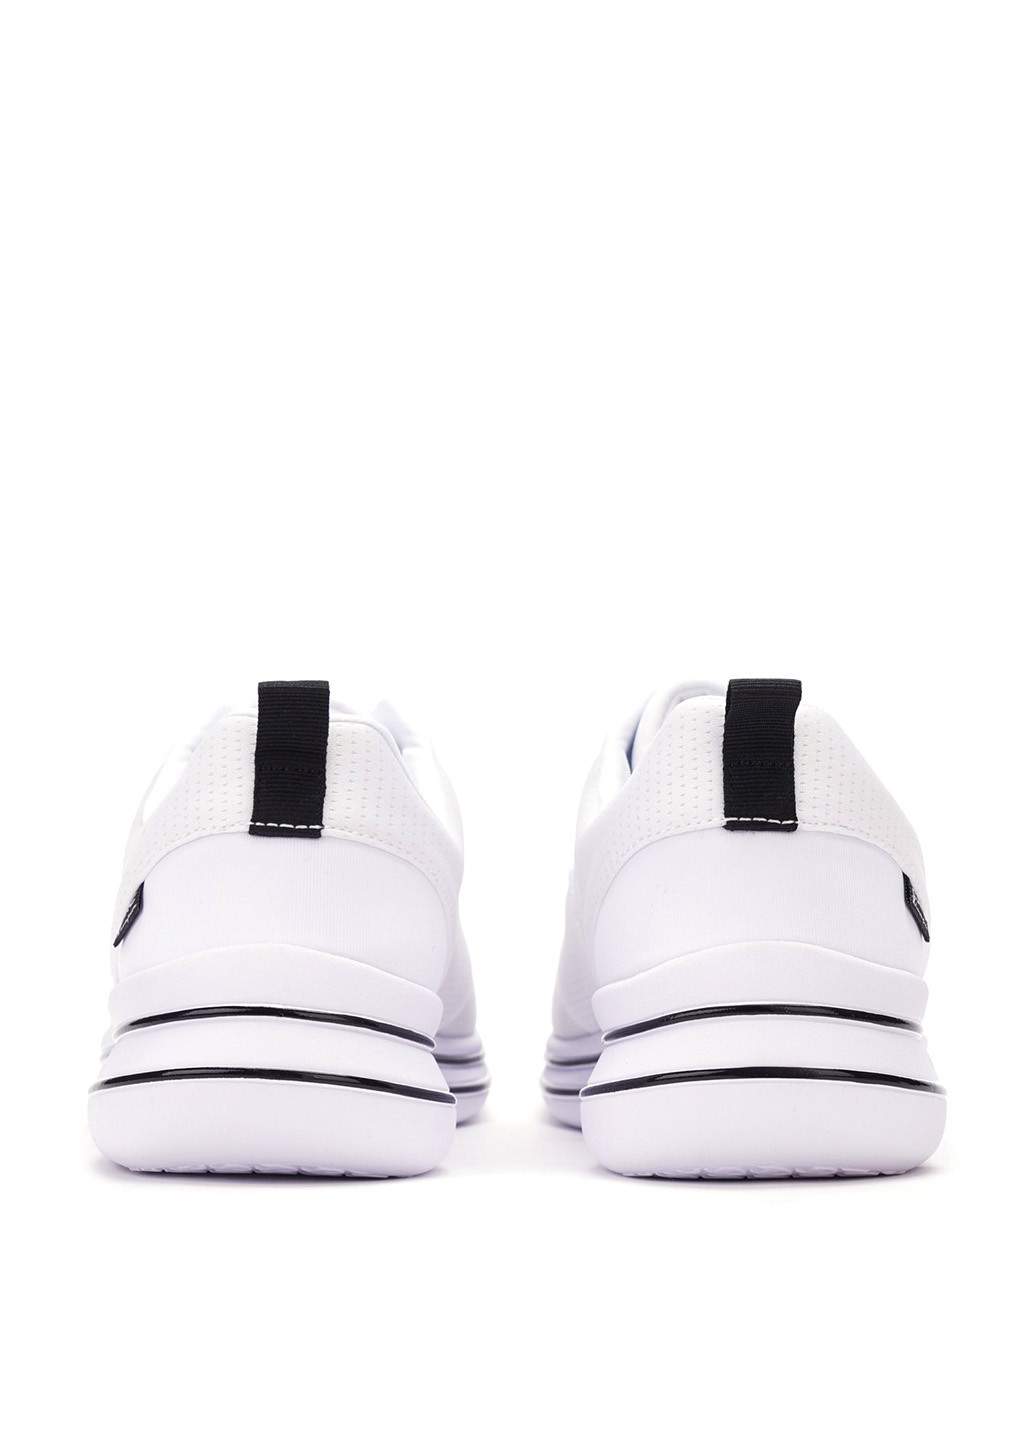 Белые демисезонные кроссовки Champion Low Cut Shoe Nyame - Lace